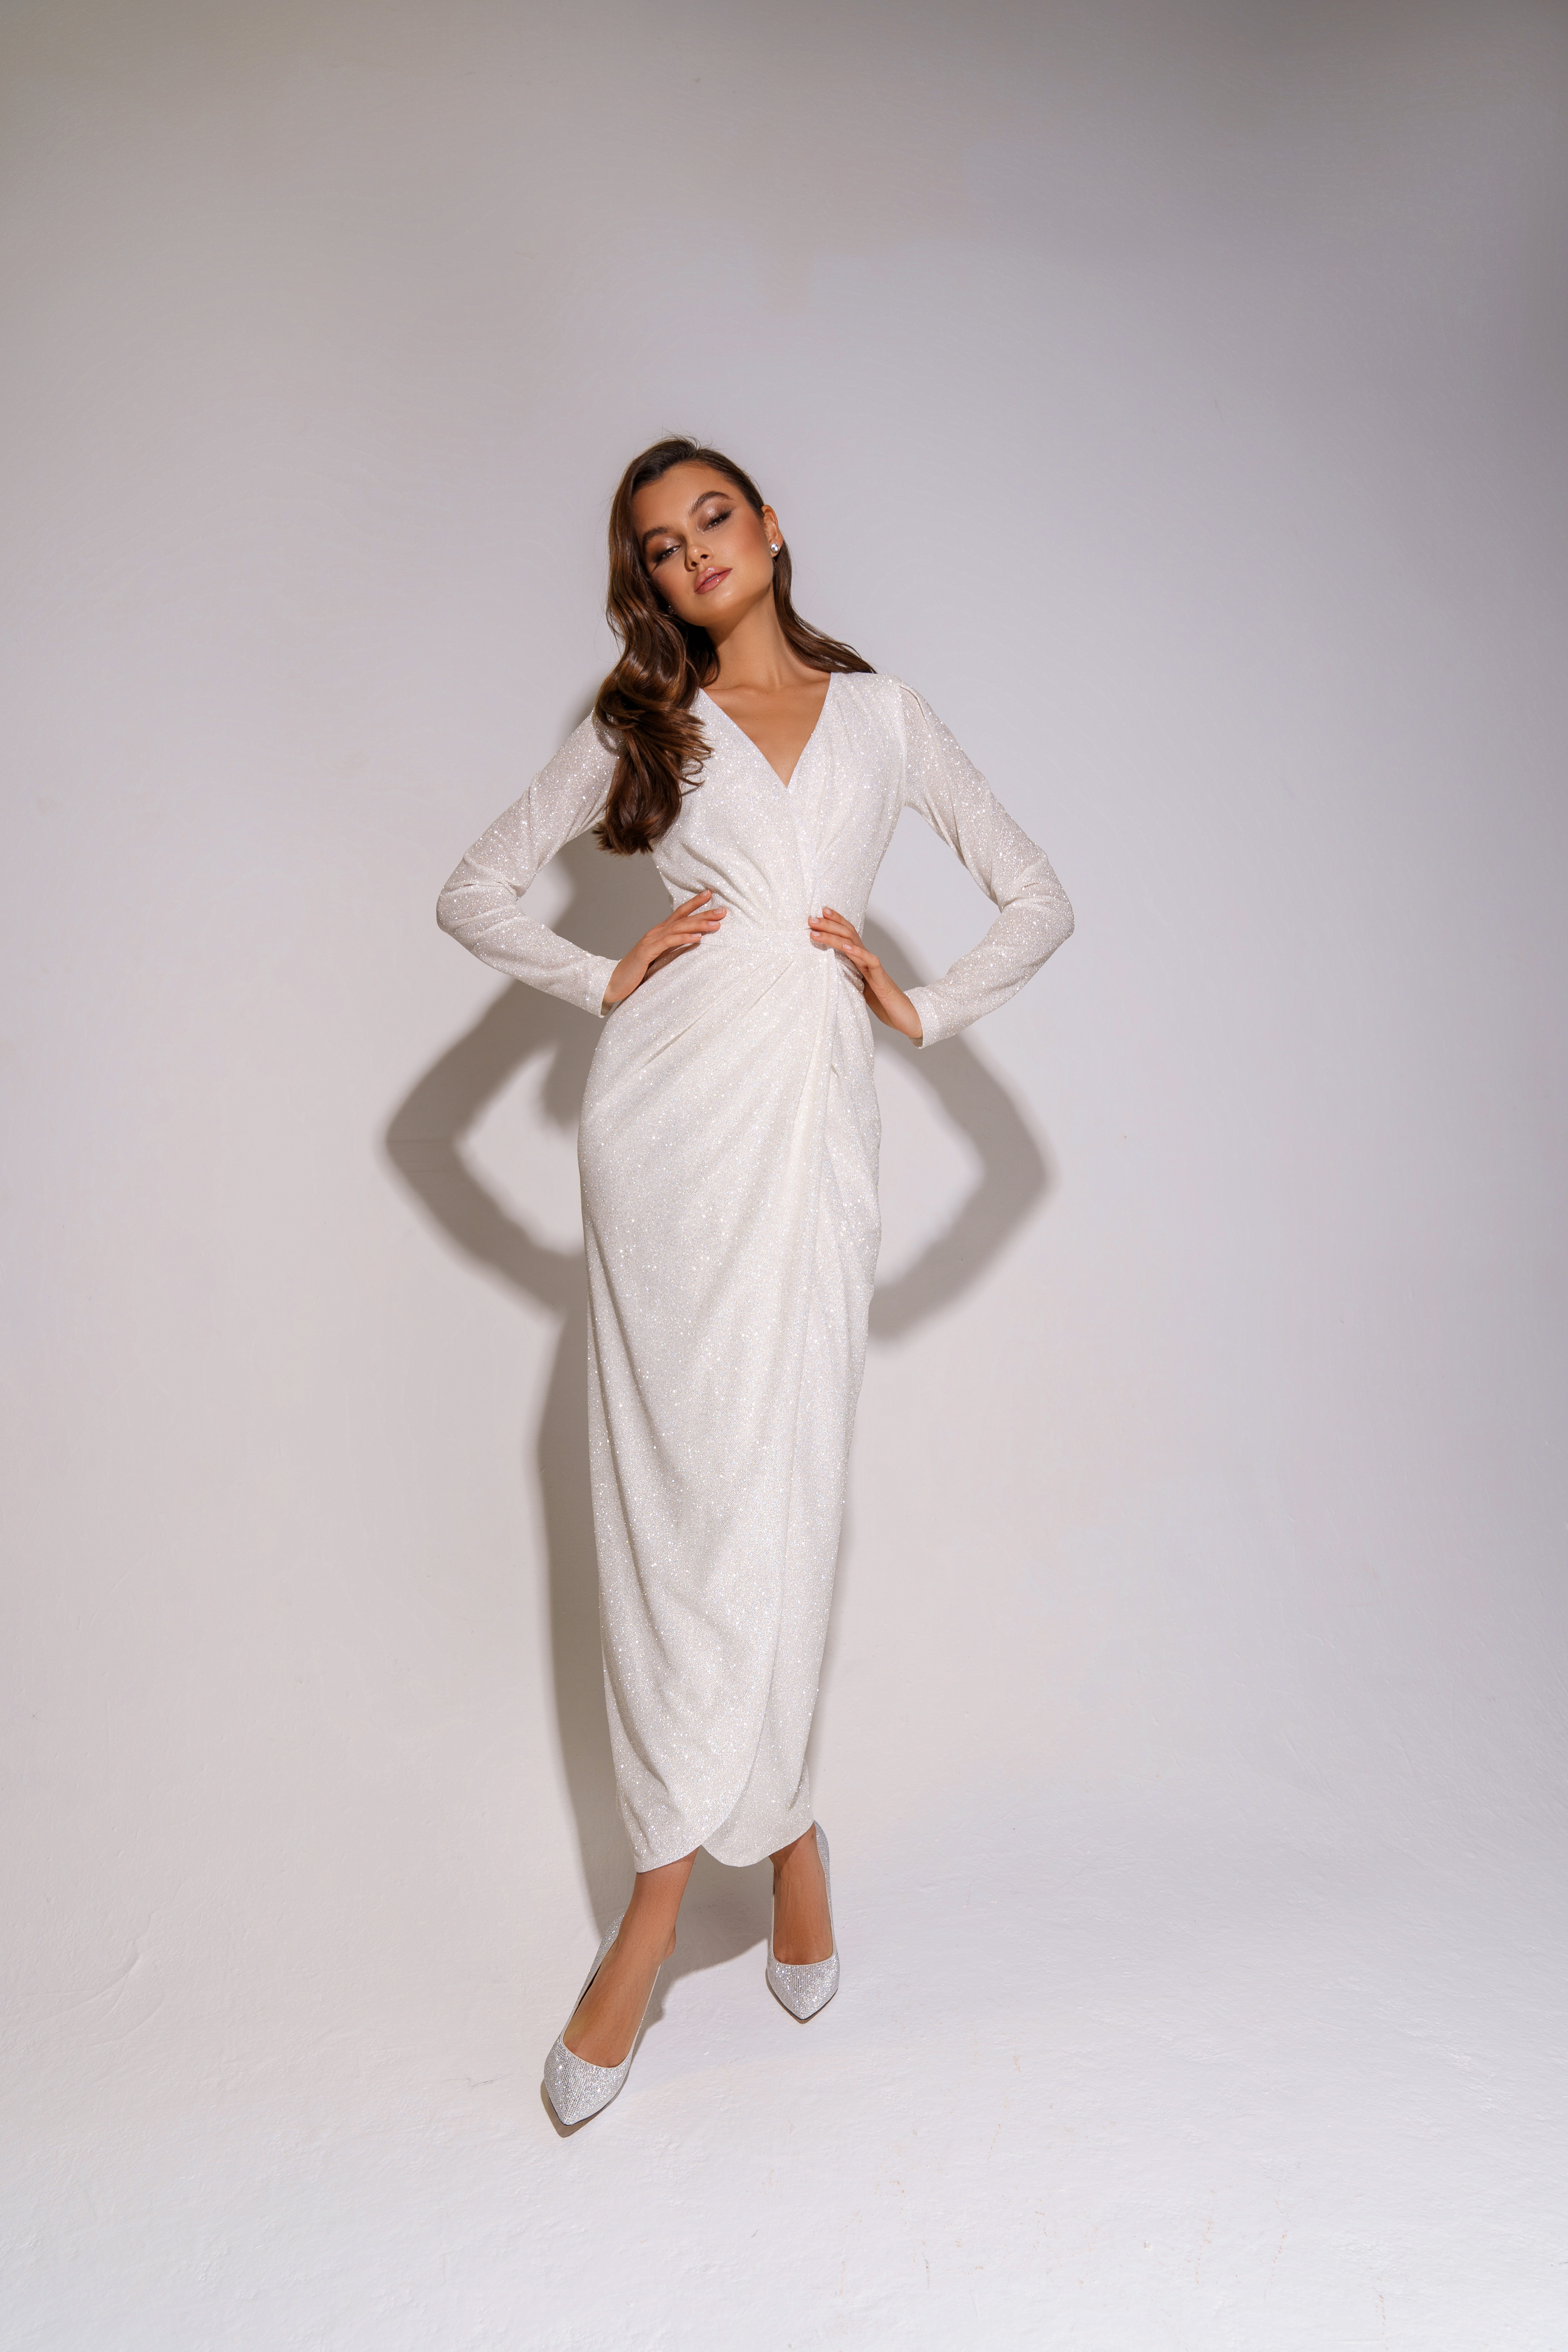 Свадебное платье «Кенди» Марта — купить в Казани платье Кенди из коллекции 2020 года